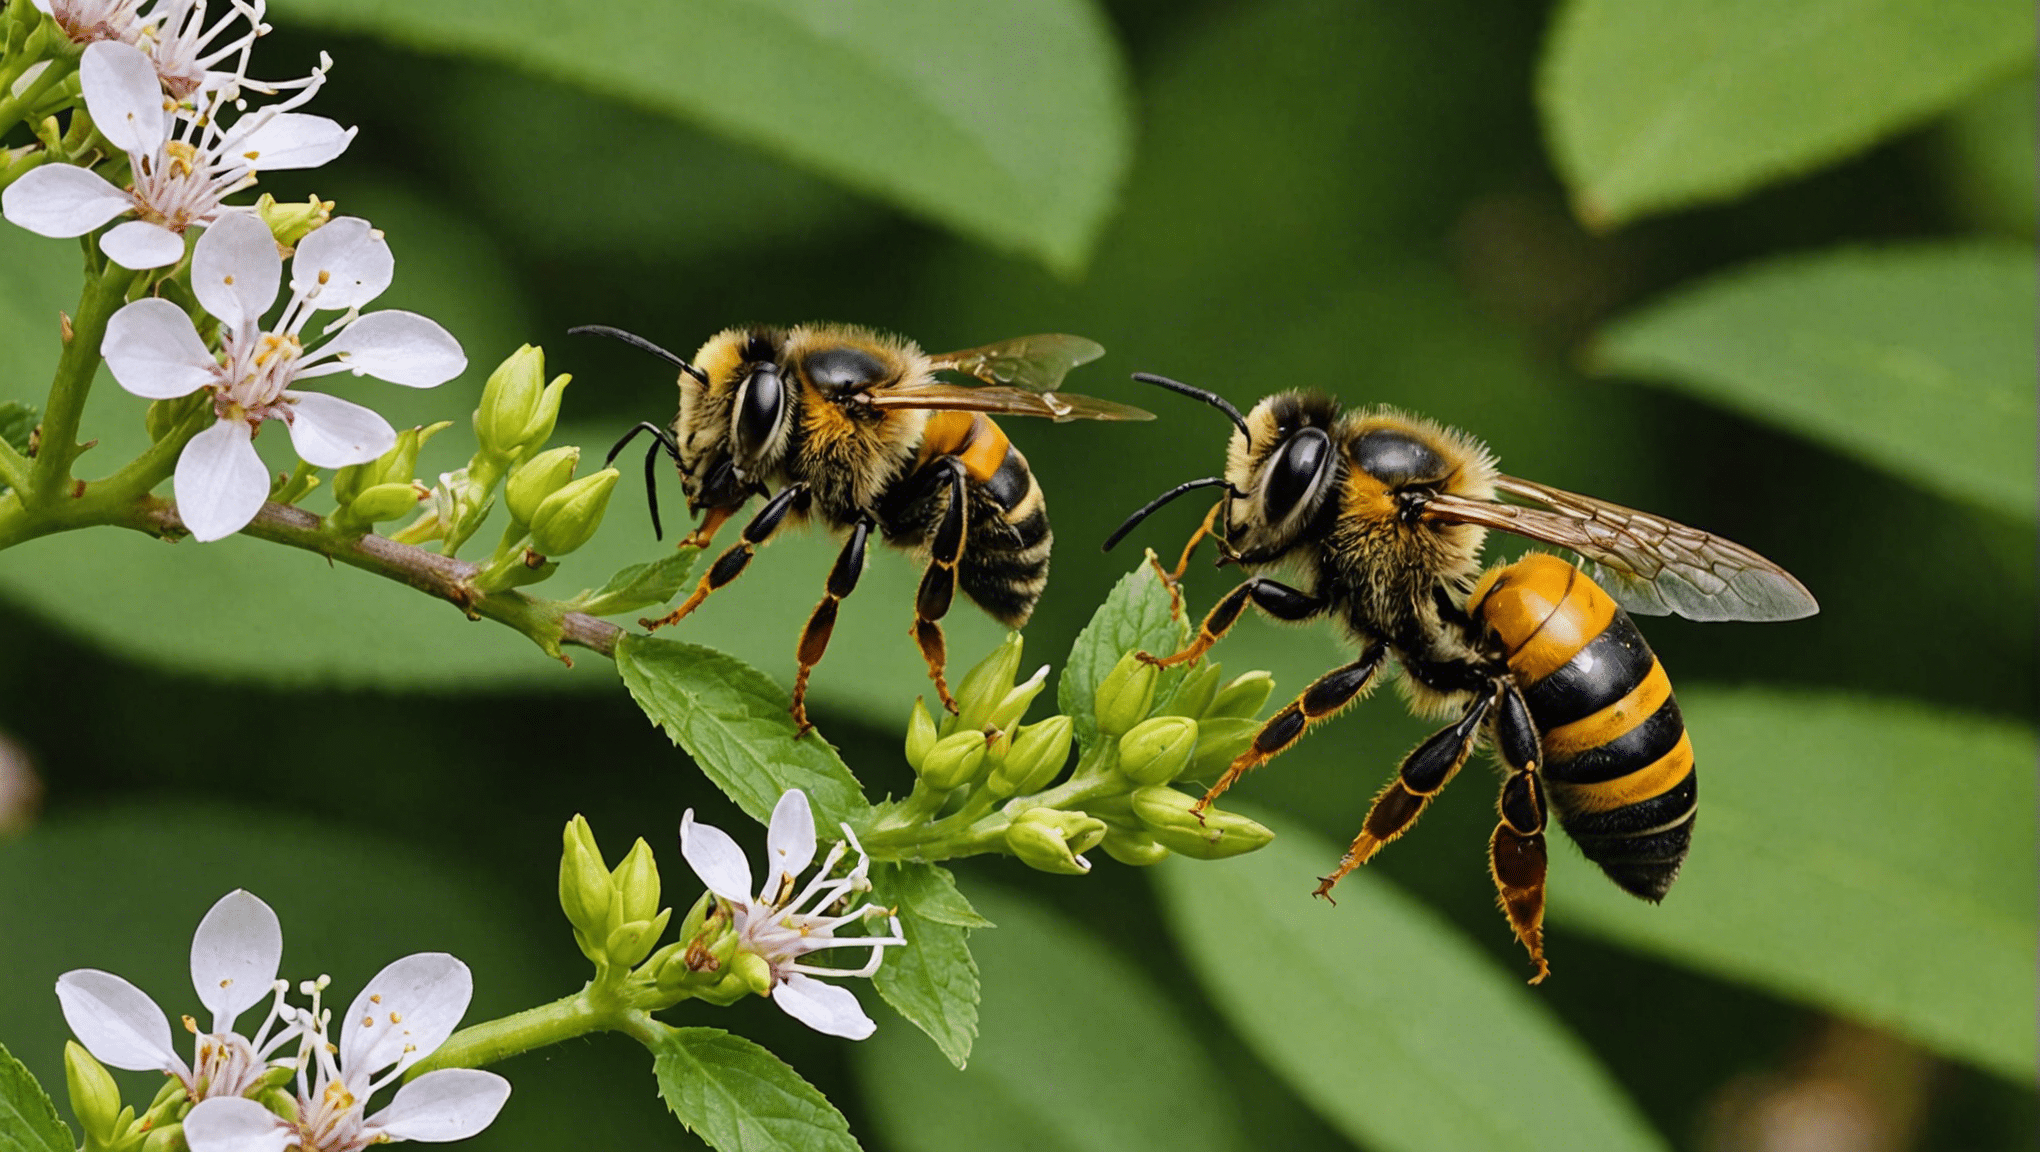 scopri le distinzioni tra api, vespe e calabroni e scopri il loro aspetto, comportamento e habitat.